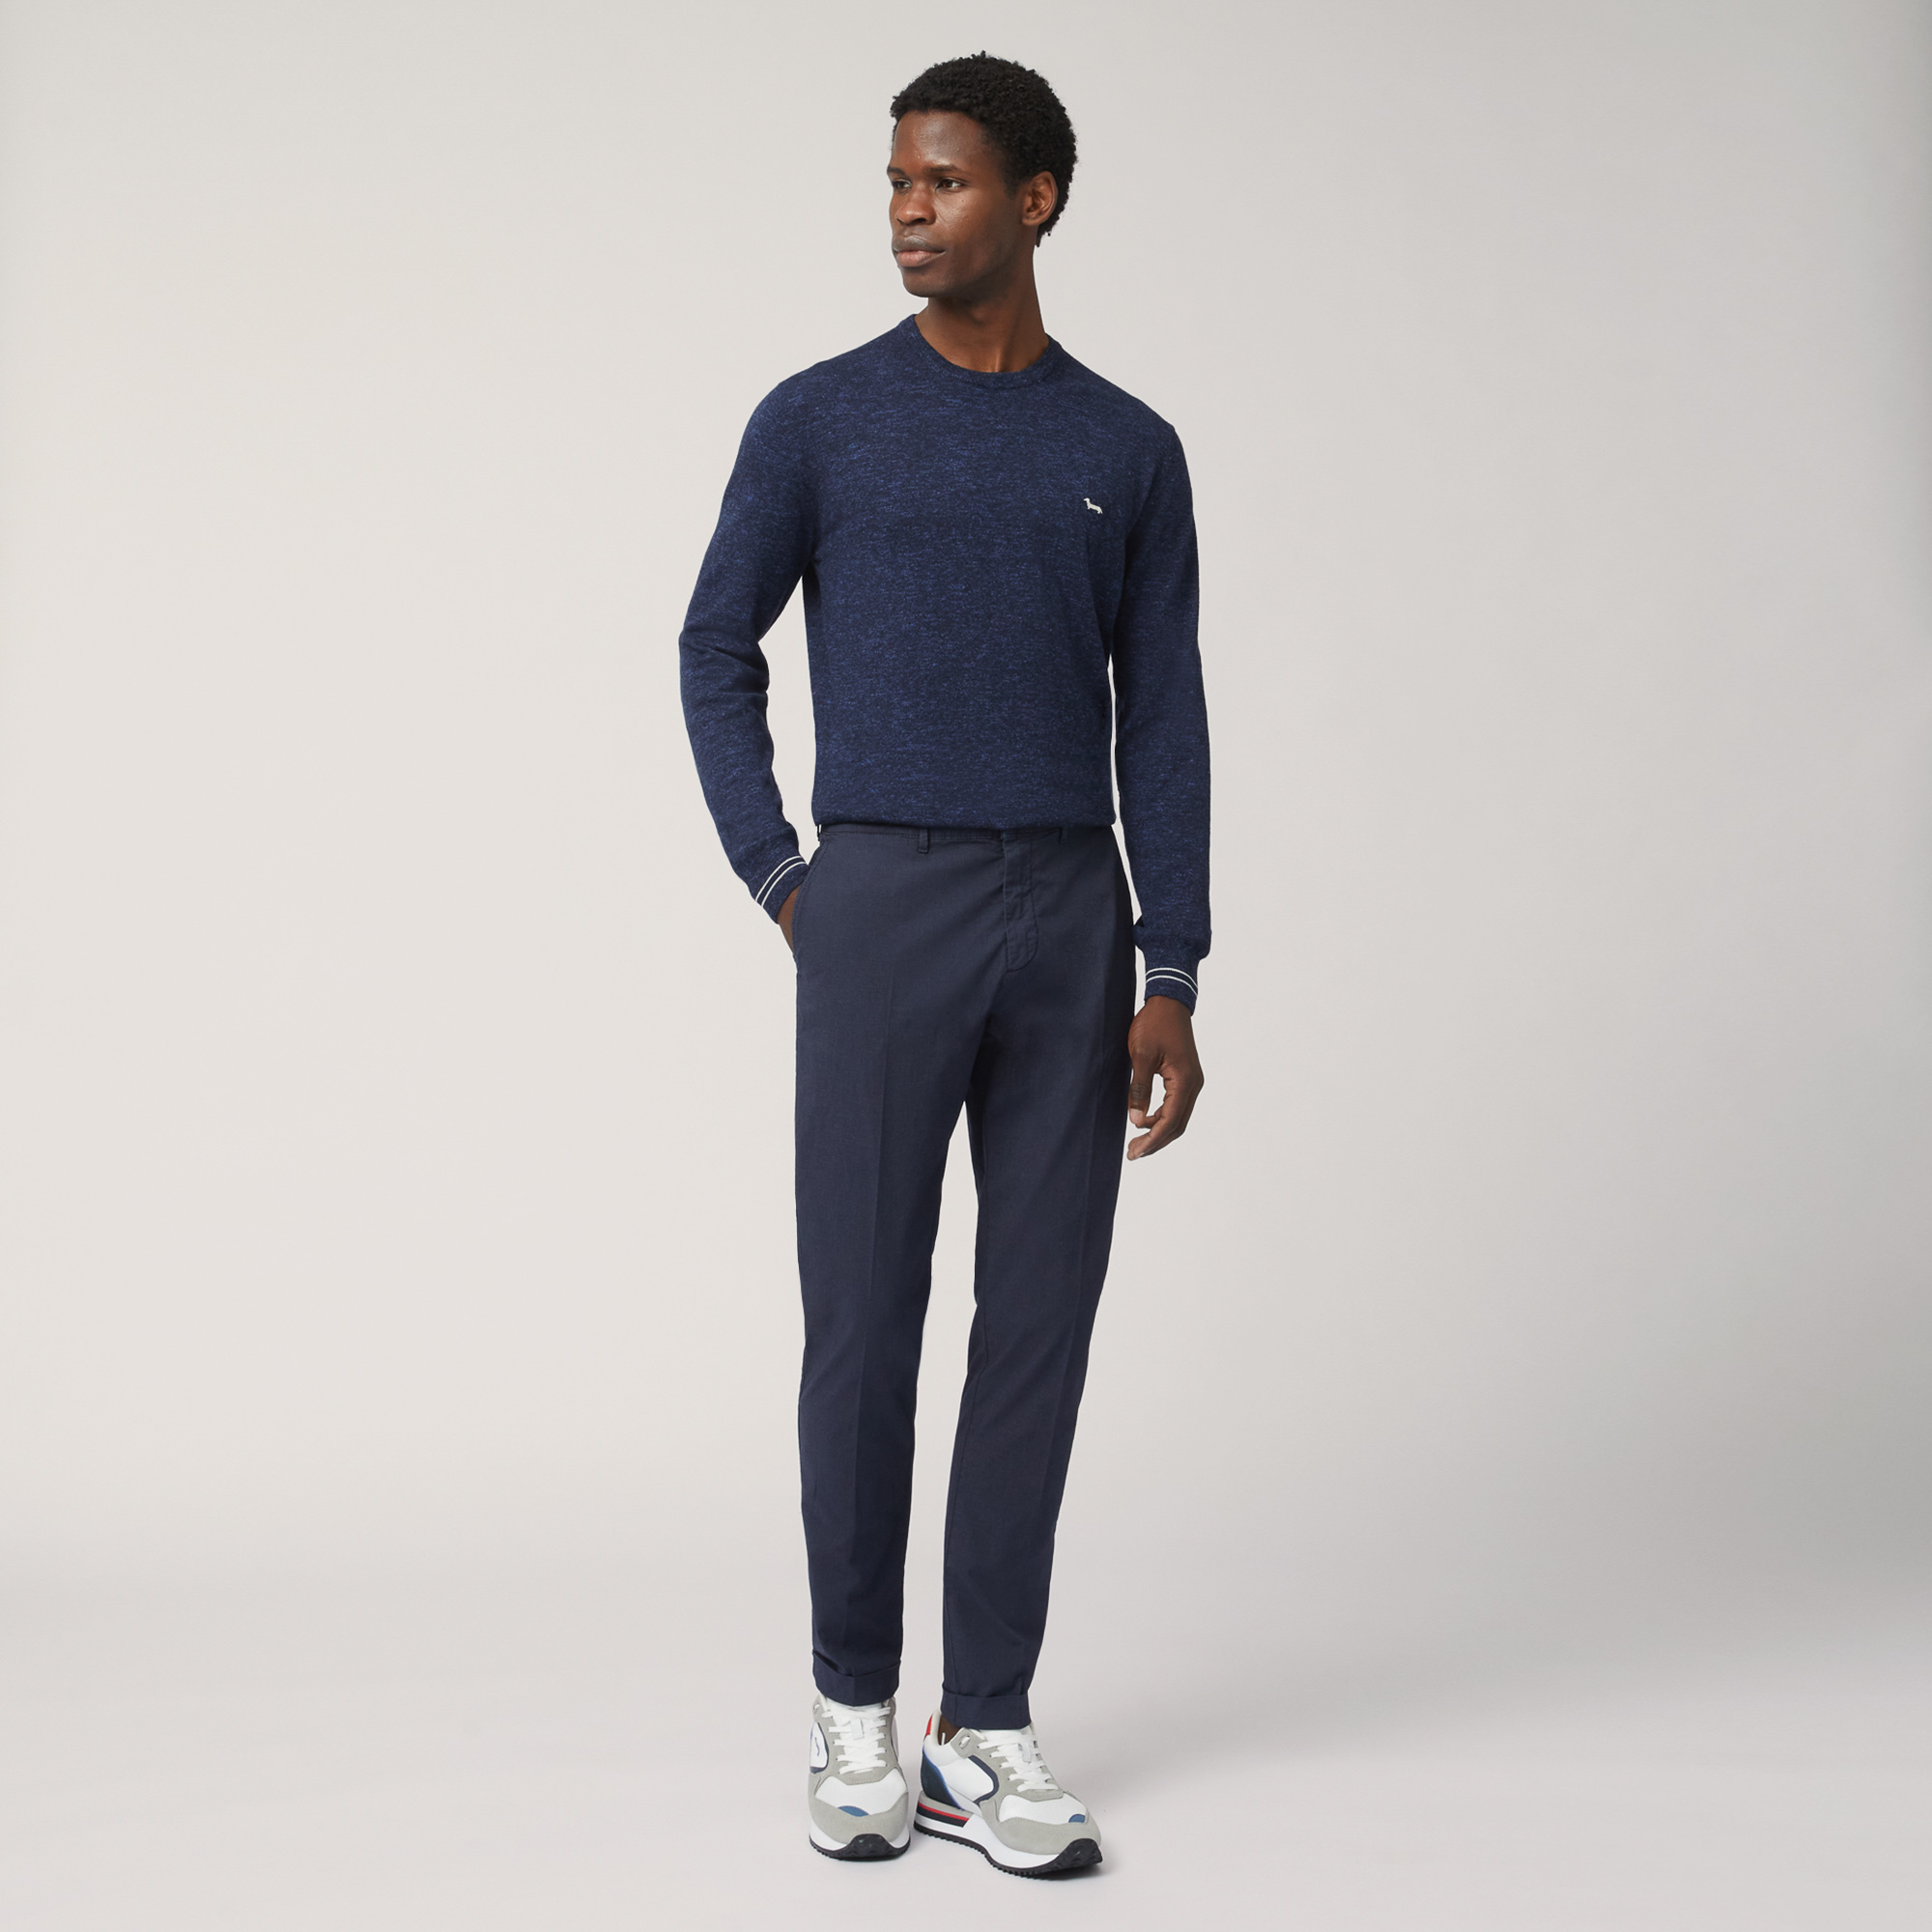 Pantaloni Chino Slim Fit, Blu Navy, large image number 3